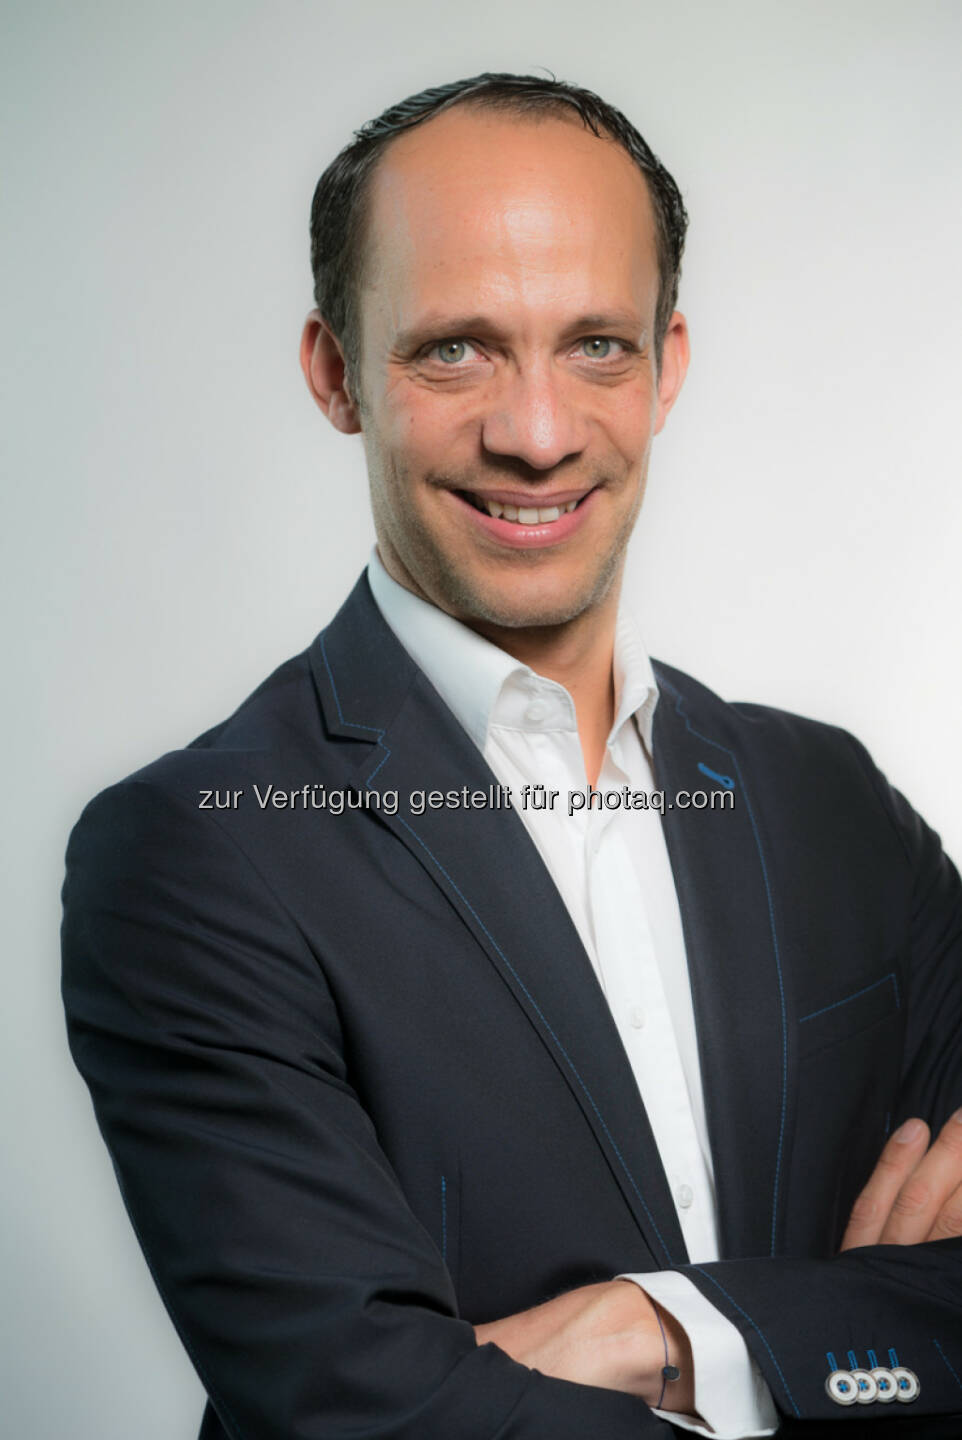 Thomas Bokesz verstärkt den Außenwerbespezialisten Epamedia als Director Client Service & Marketing (Bild: Helmut Mitter)